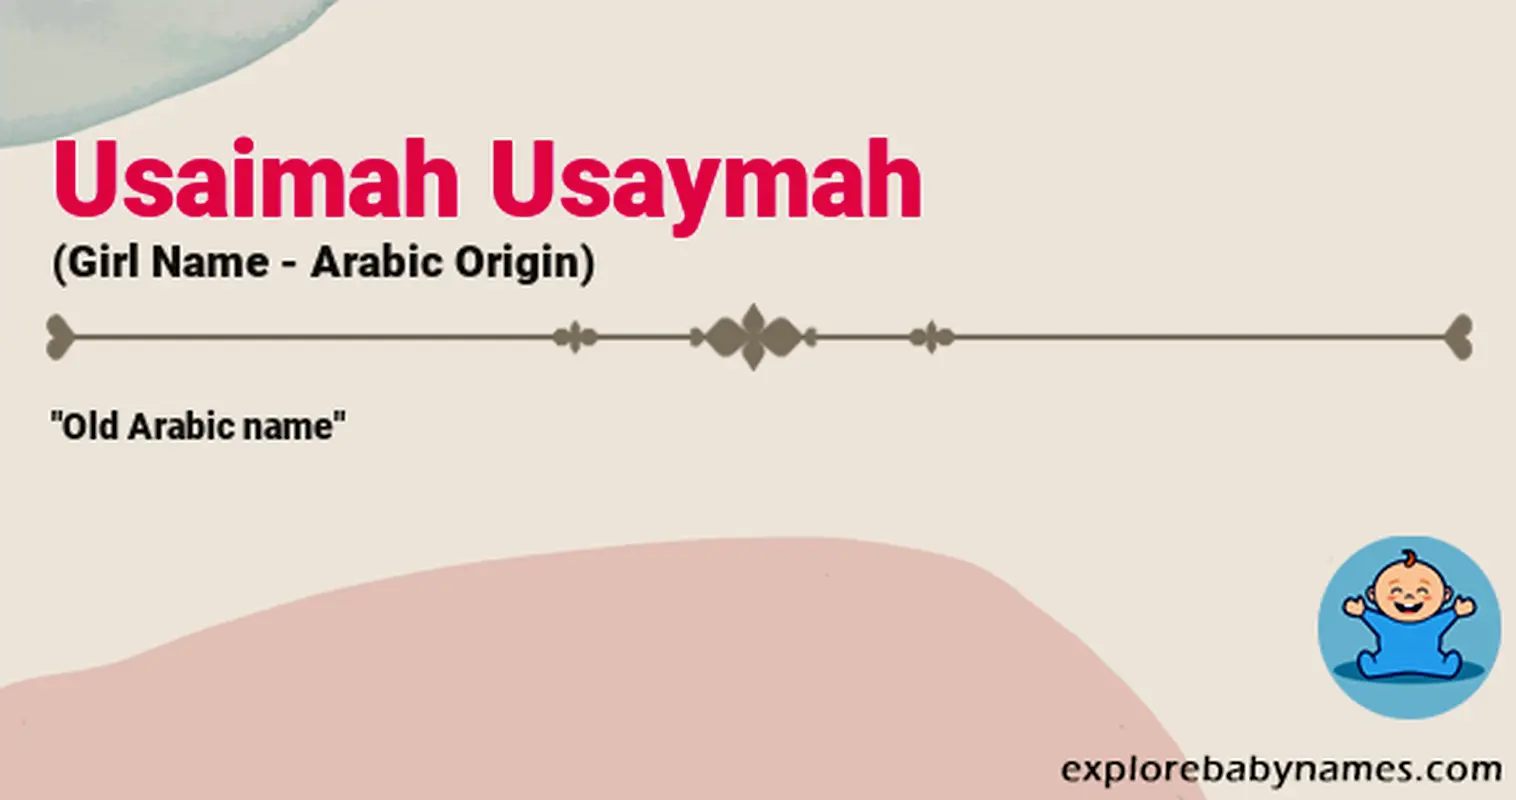 Meaning of Usaimah Usaymah